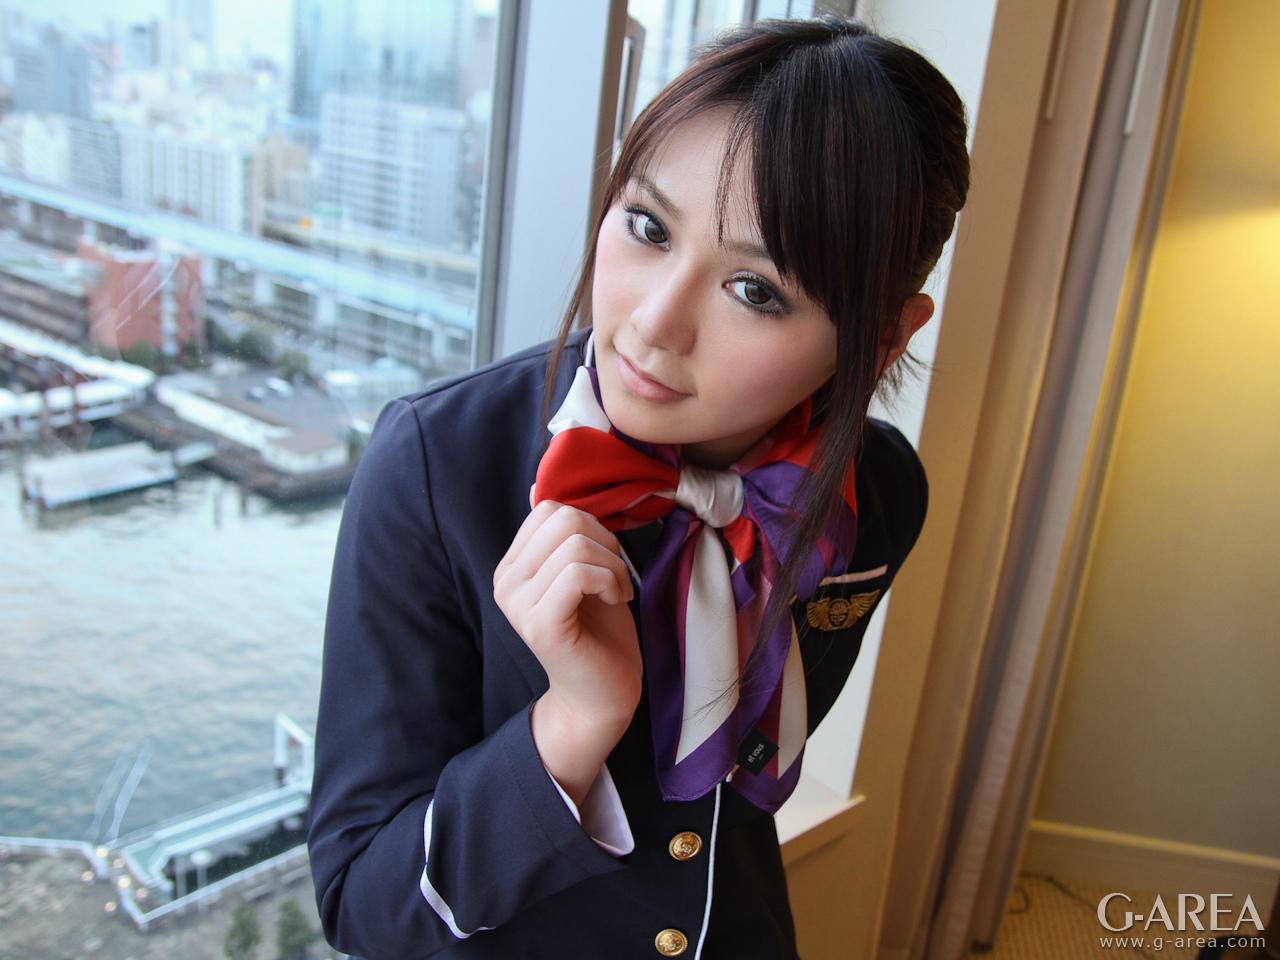 GAREA-750YORIKO 喜歡cosplay的正統美少女的專業學生